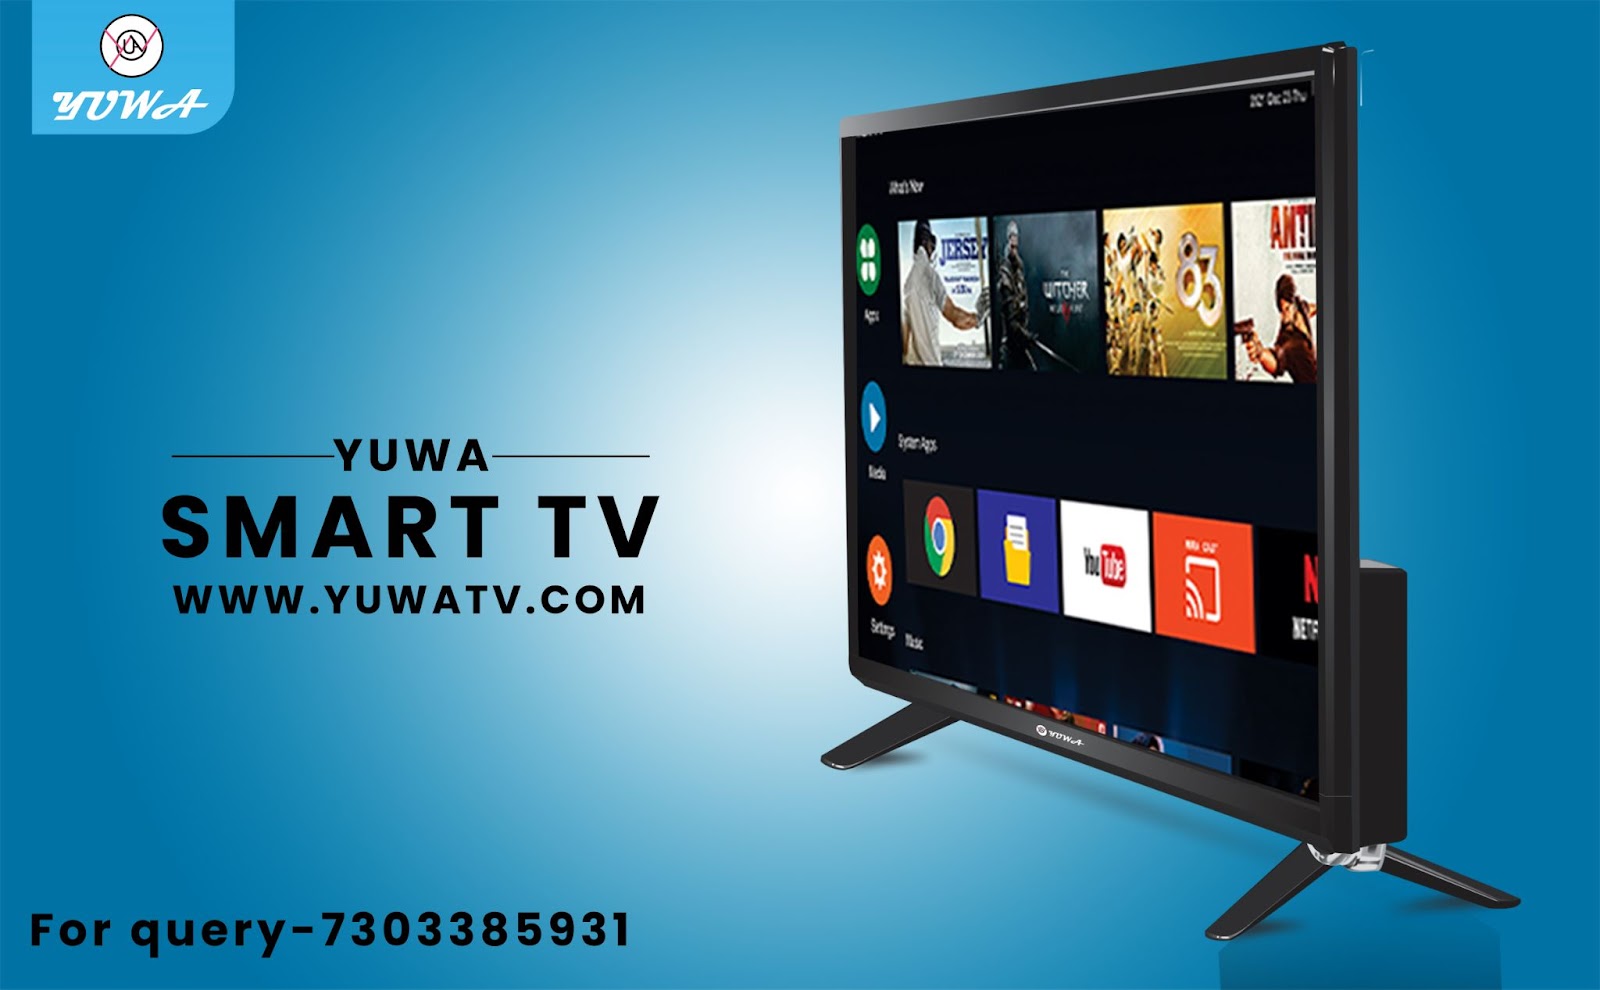 Smart LED TV Manufacturers in Delhi NCR
Android Television Manufacturers in noida
Best Smart LED TV in Noida
Best Smart TV in Noida
Best Smart LED TV in India
LED TV Manufacturers